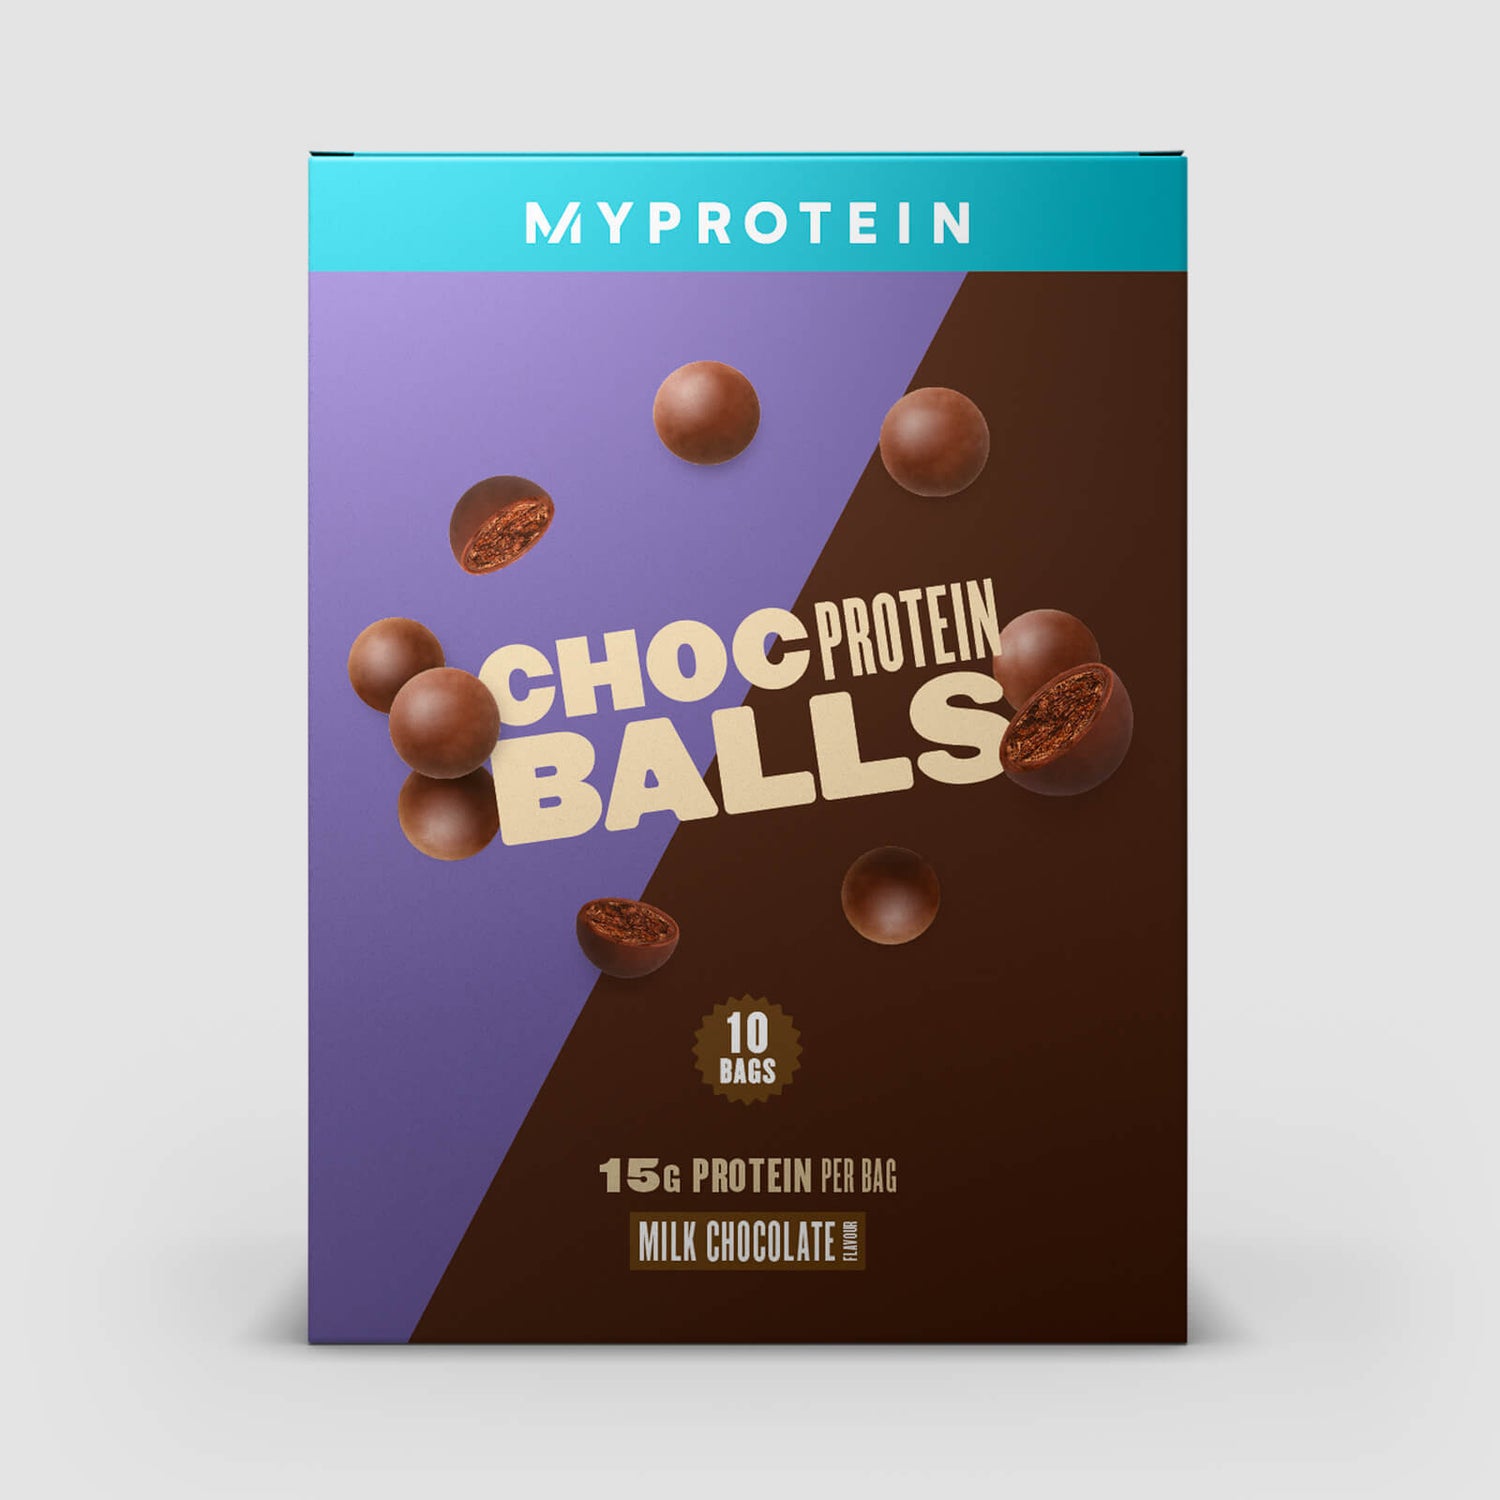 Šokoladiniai baltyminiai rutuliukai „Choc Protein Balls“ - 10 x 35g - Šokolado